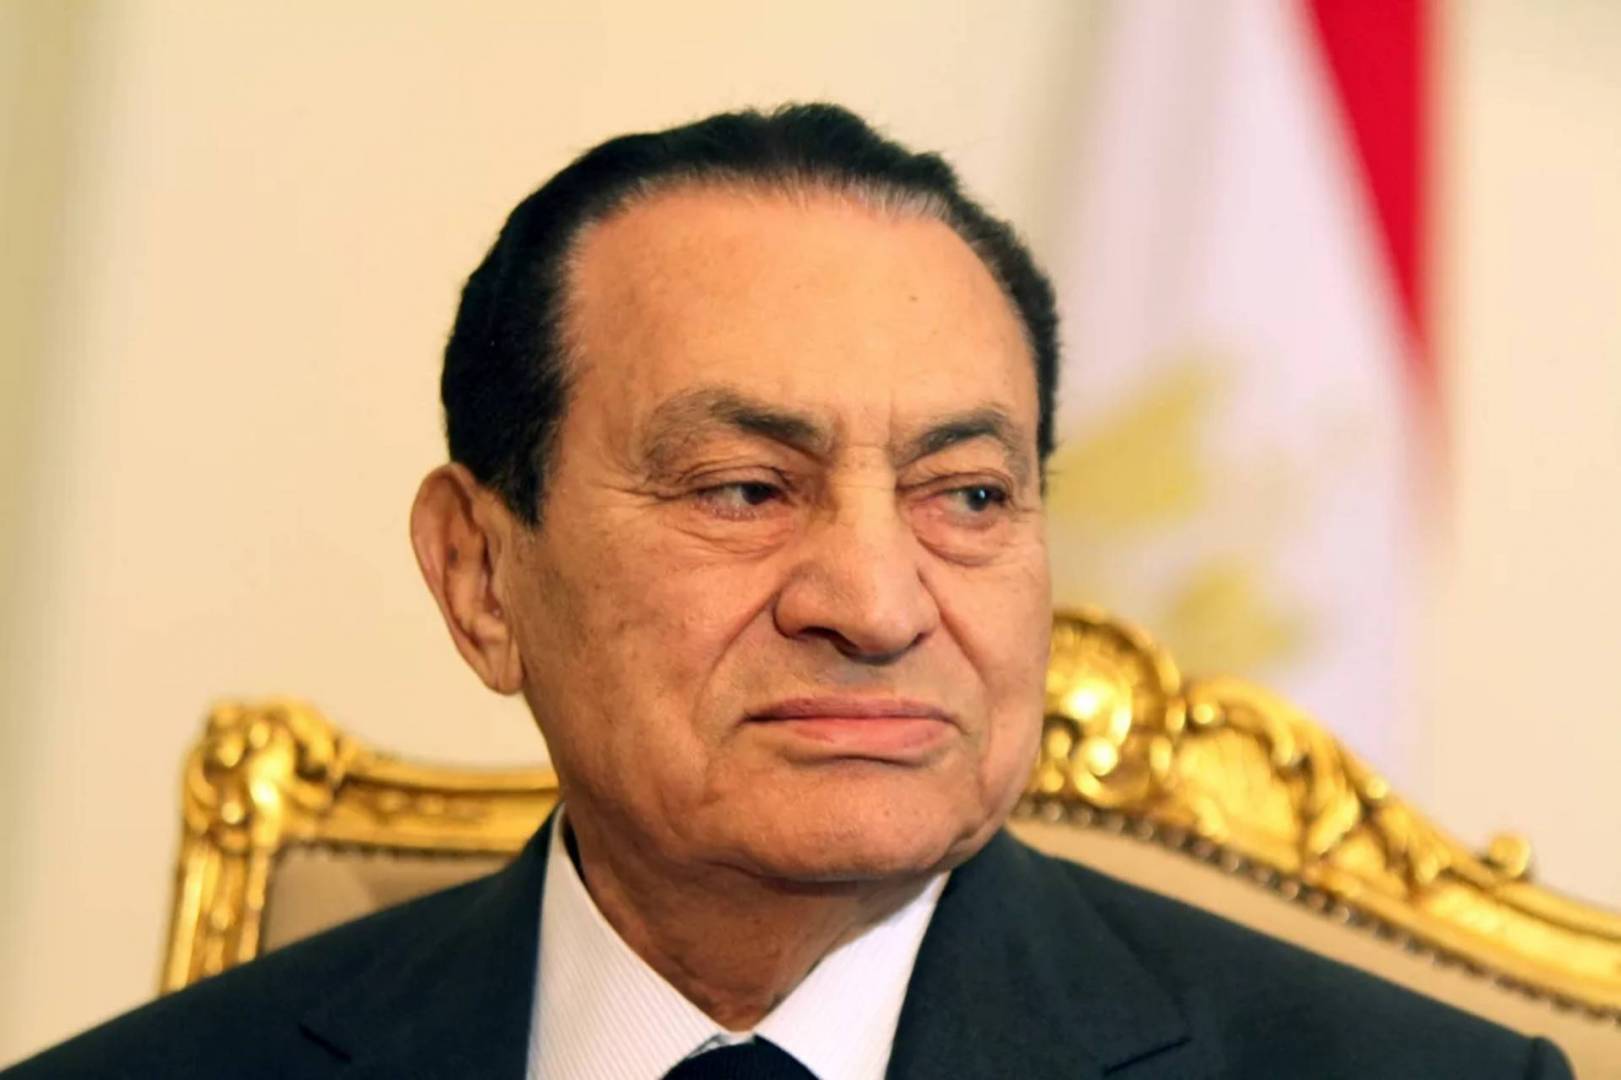   عاجل| إعلان الحداد العام فى مصر لمدة 3 أيام